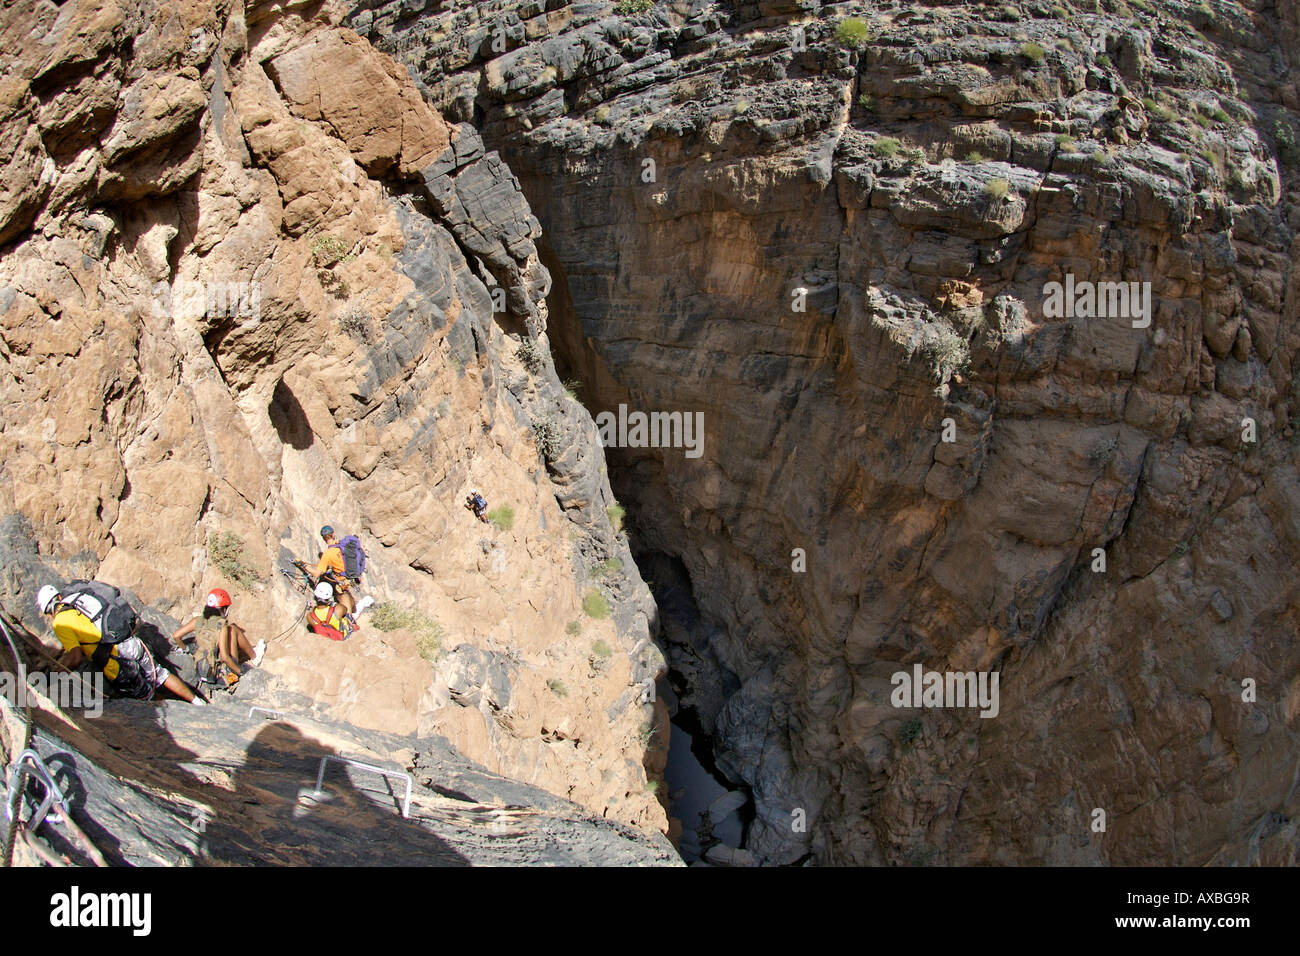 Gli escursionisti facendo la Via Ferrata escursione nel Canyon di serpente, parte di Wadi Bani auf in Jebel Akhdar del western montagne Hajar in Oman. Foto Stock